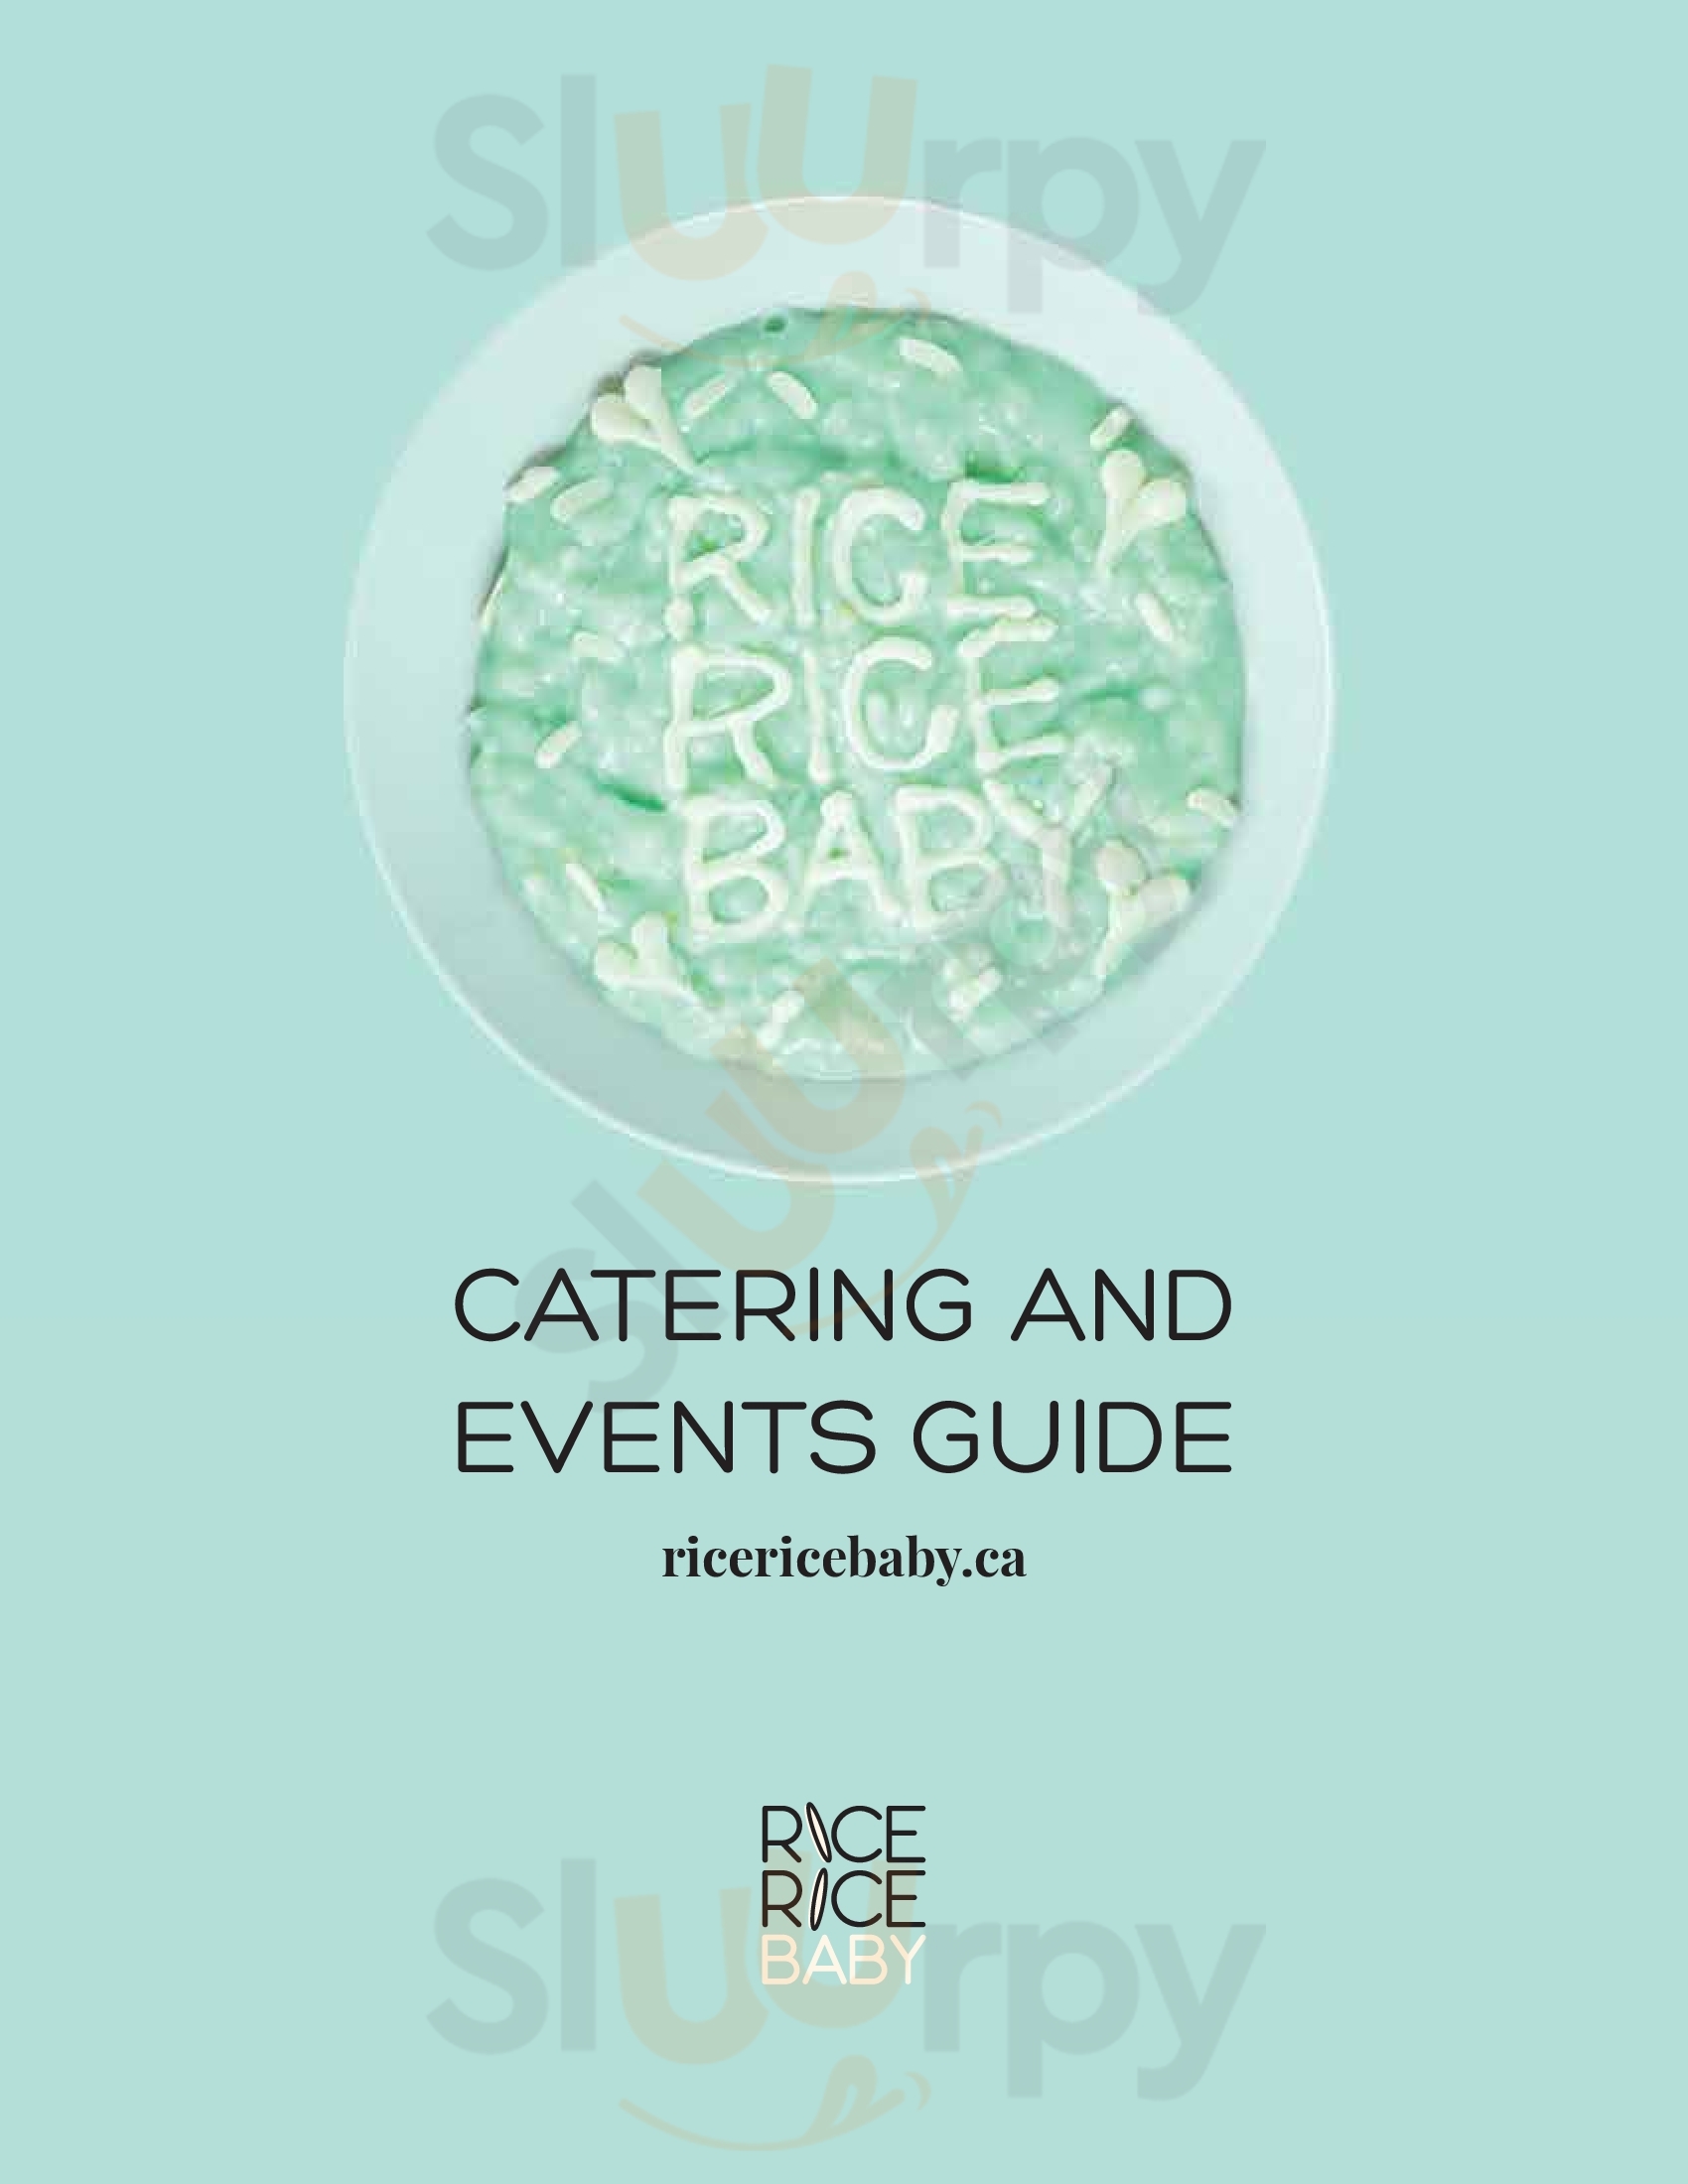 Rice Rice Baby Toronto Menu - 1